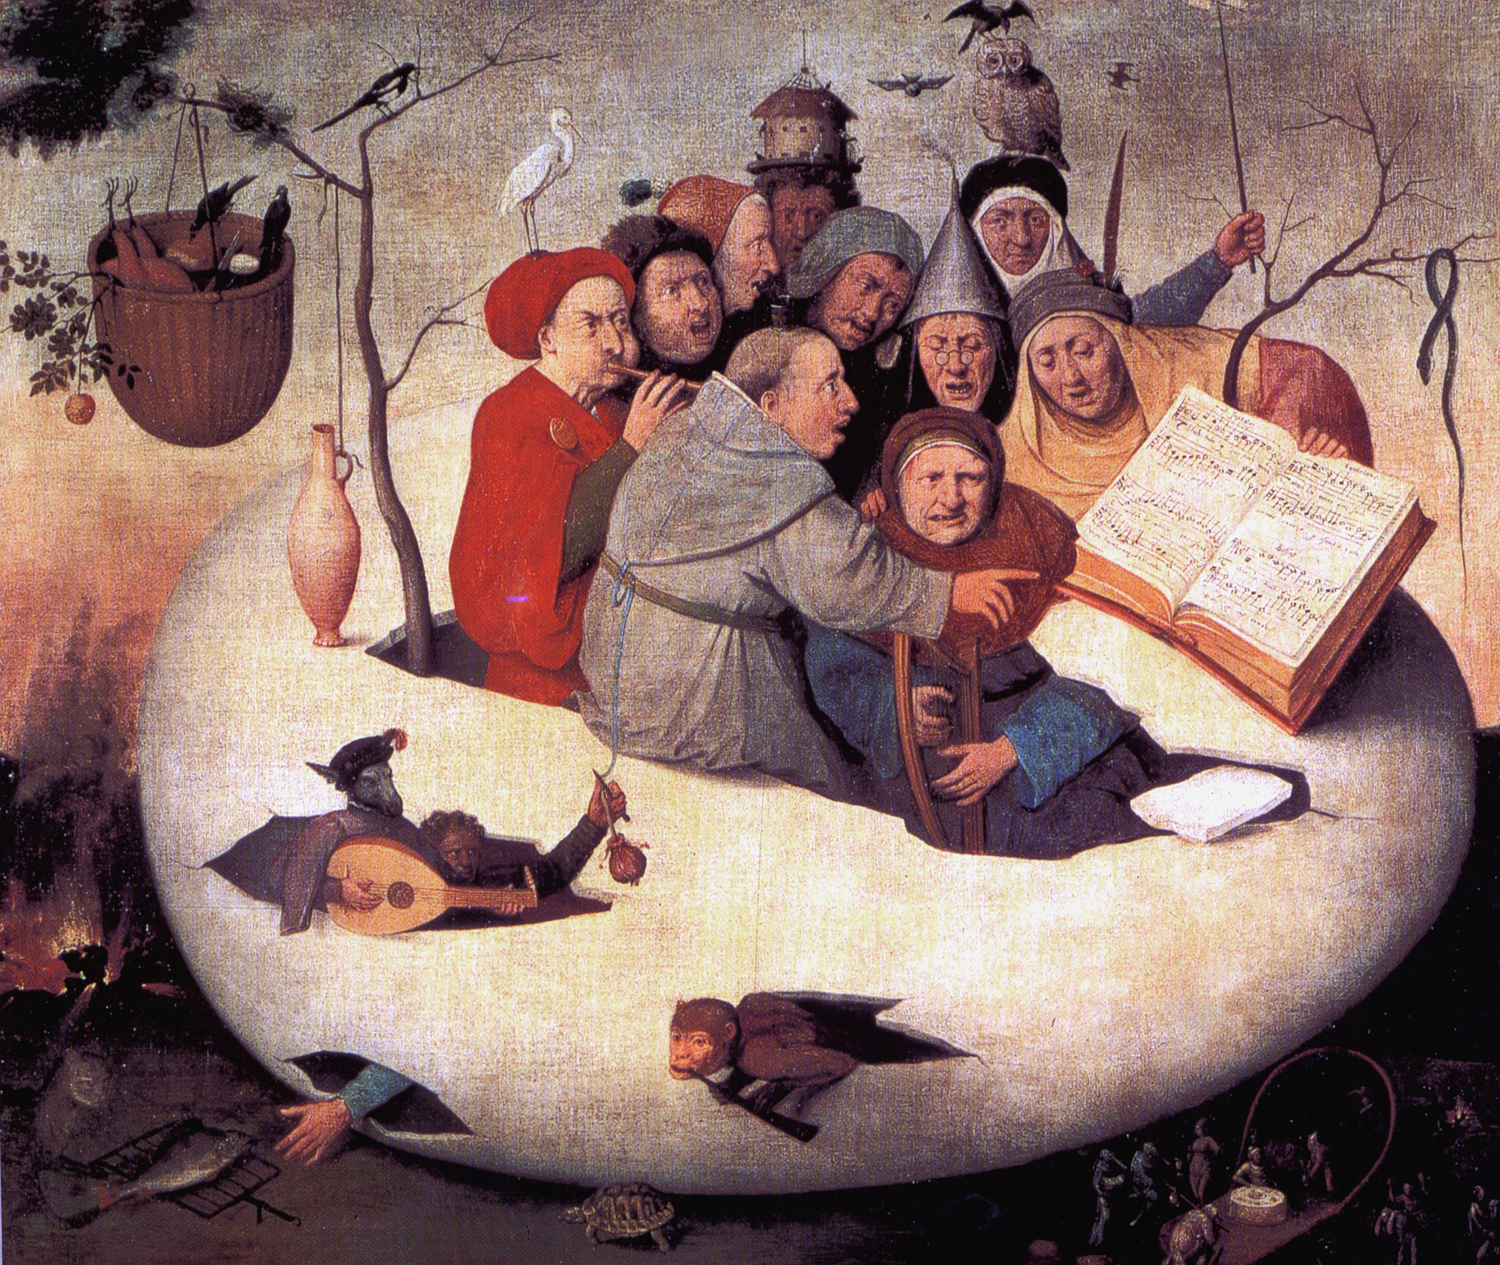 Concerto no Ovo by Hieronymus Bosch - 1561 